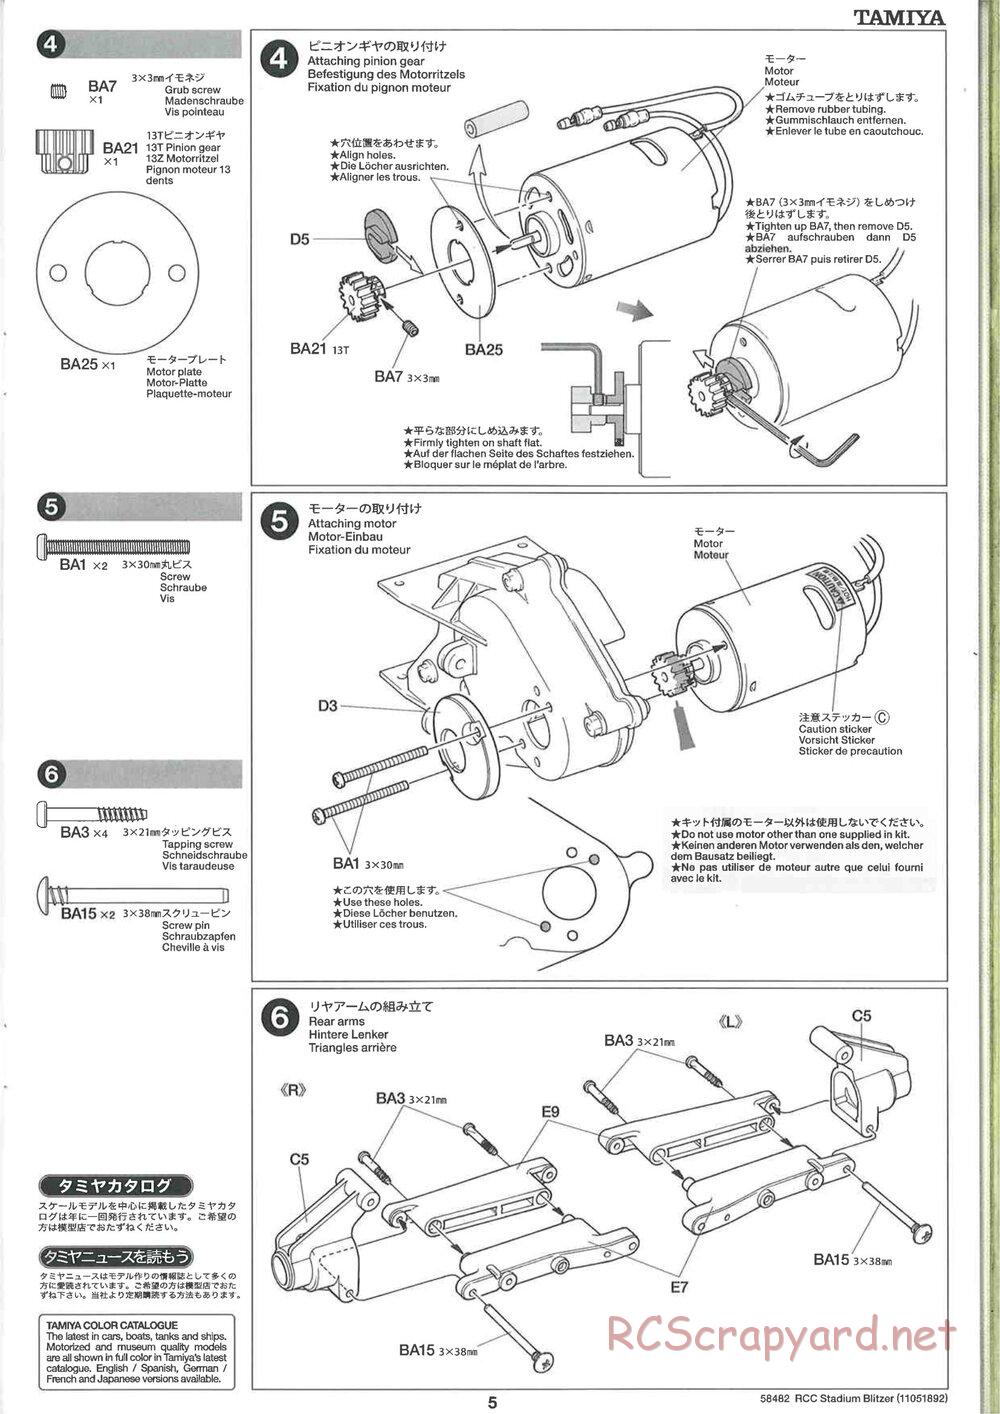 Tamiya - Stadium Blitzer 2010 - FAL Chassis - Manual - Page 5